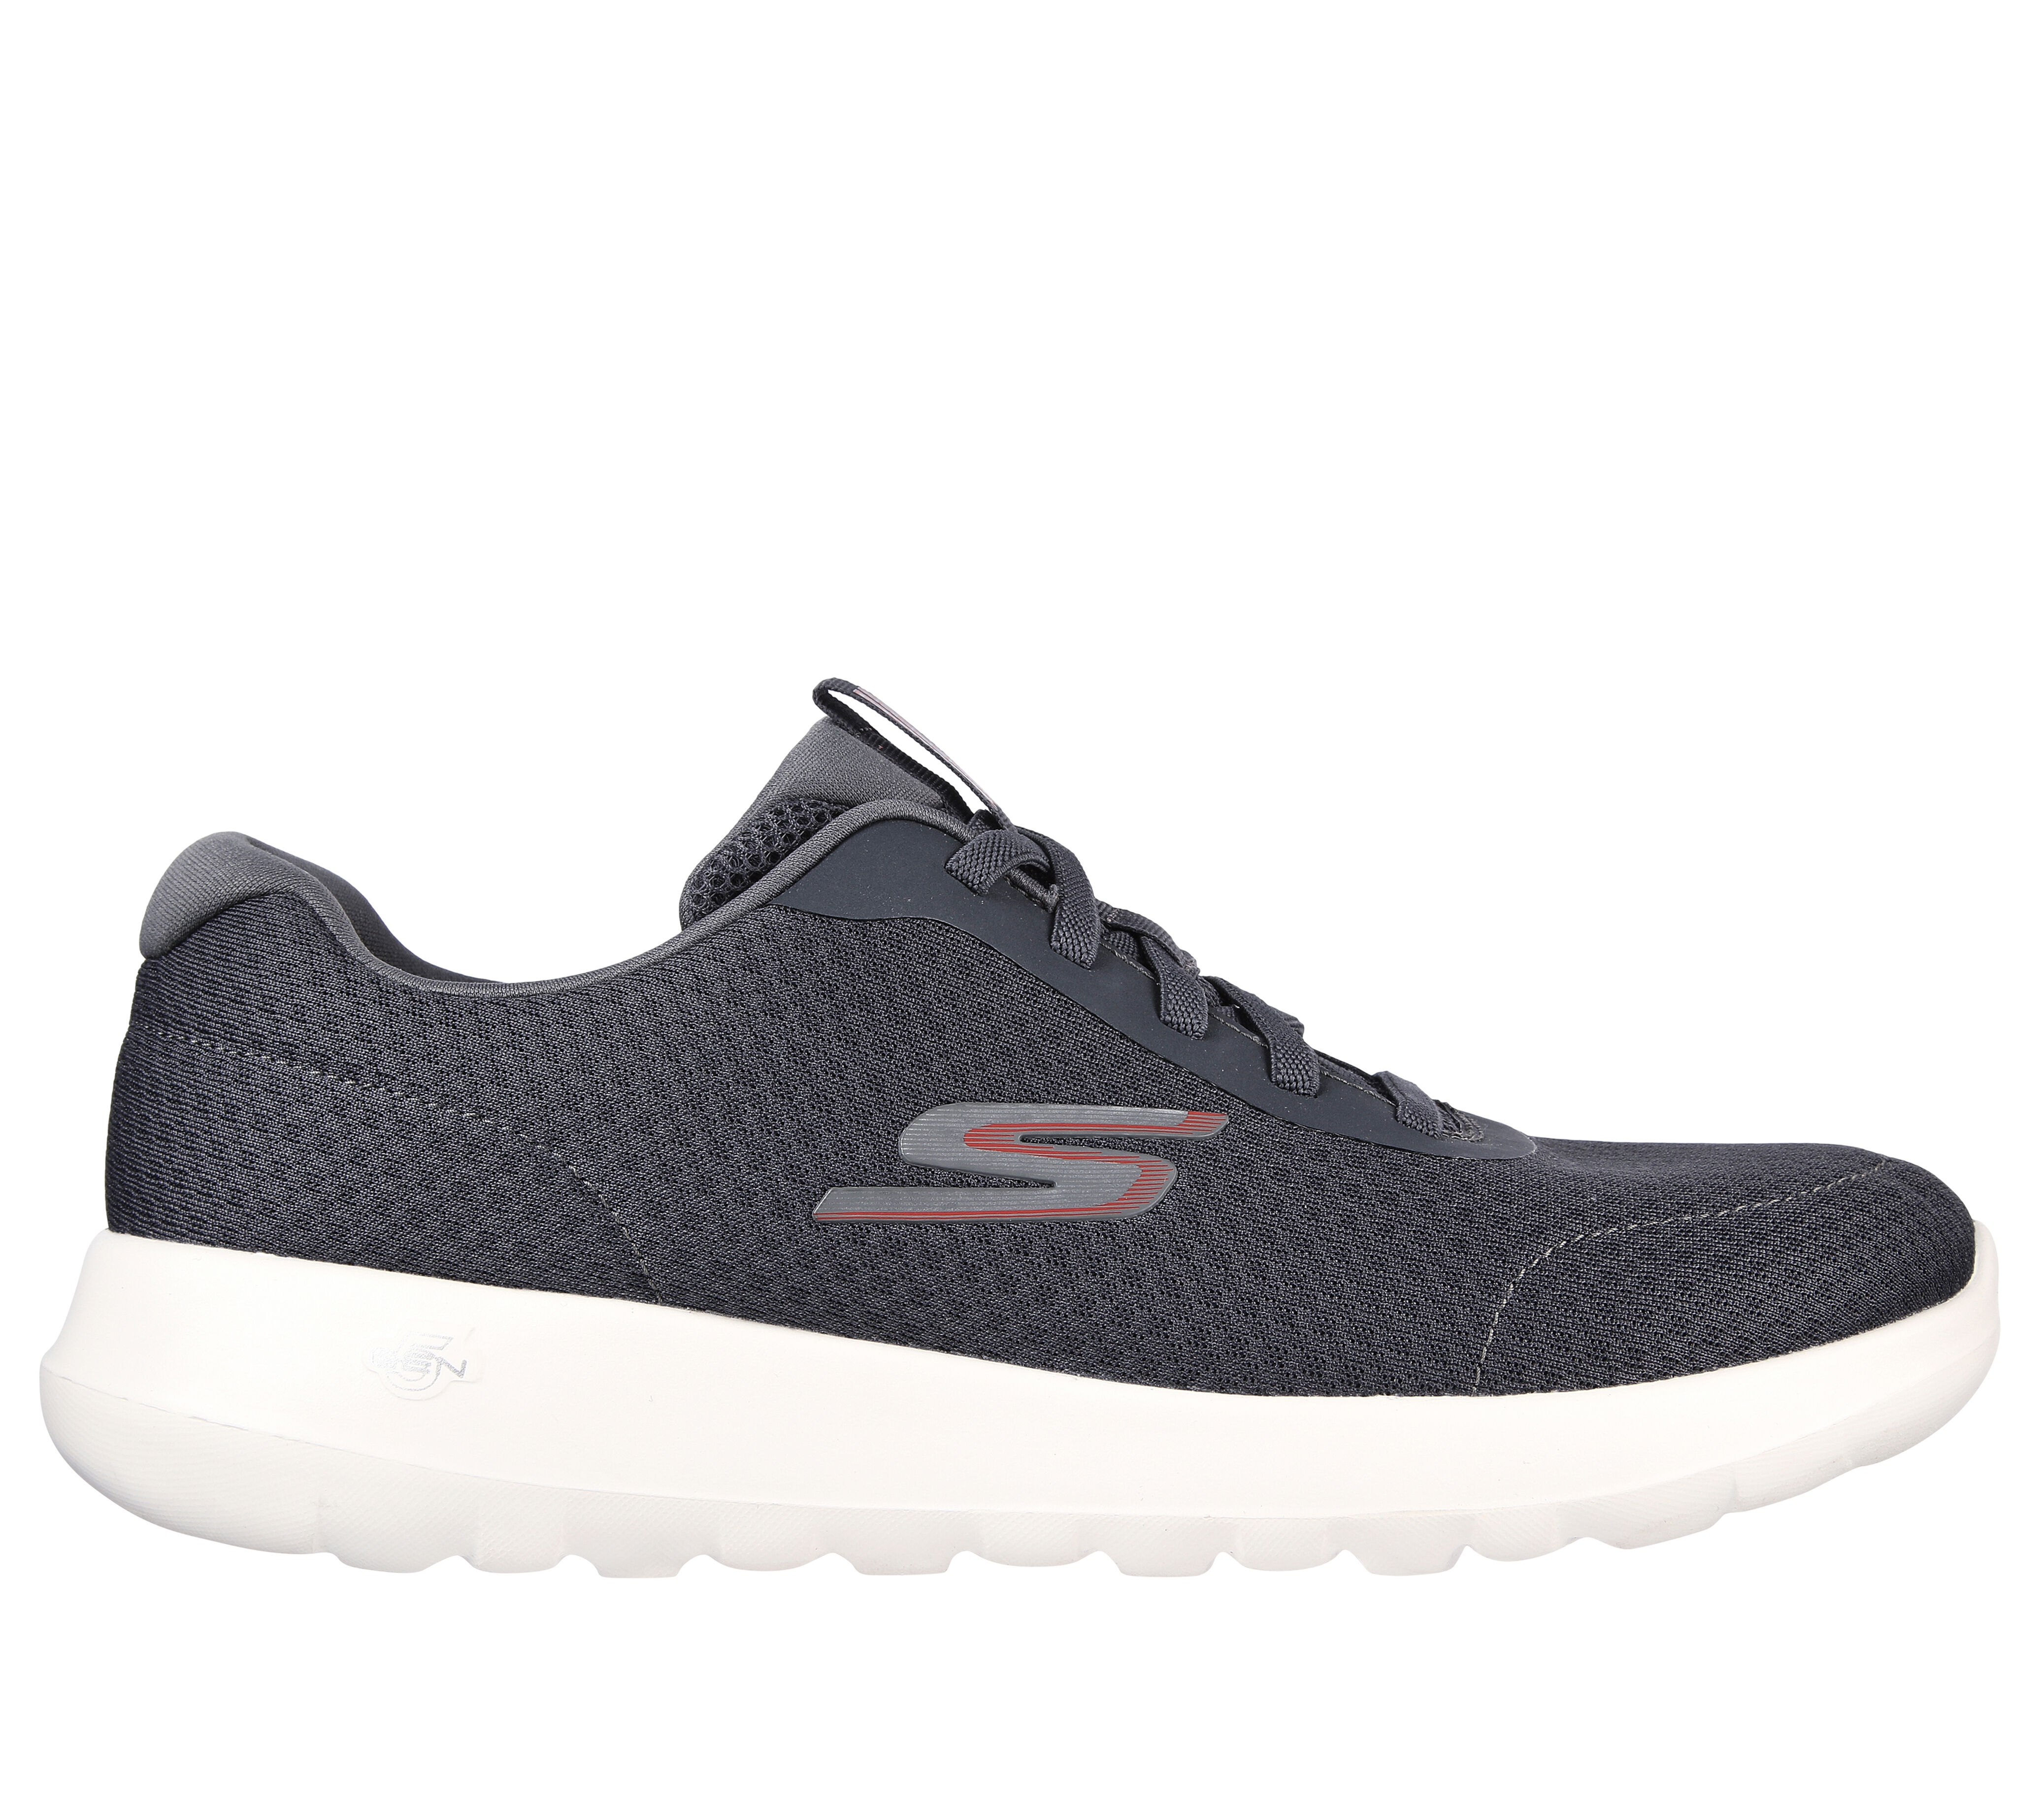 Men's Slip On Shoes & Trainers | Men's Slip Ons | SKECHERS